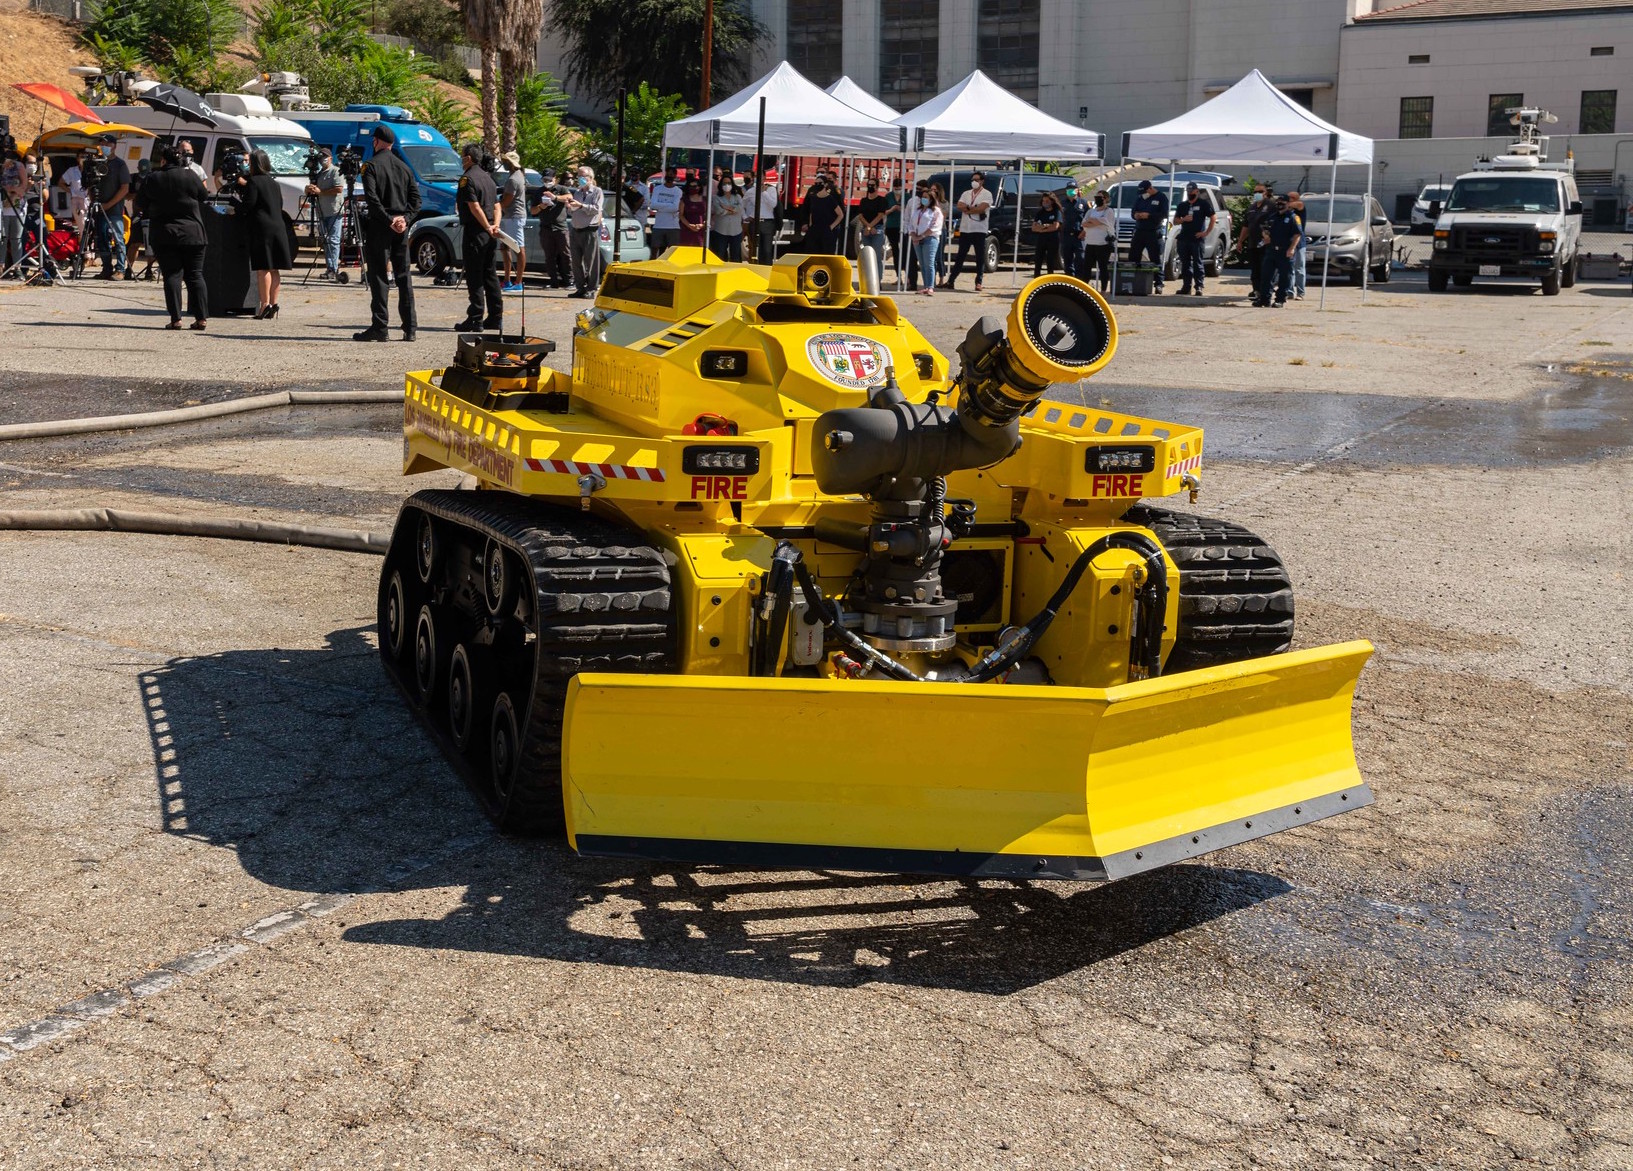 Les pompiers de Los Angeles dévoilent un robot capable d'envoyer 10 tonnes d'eau par minute